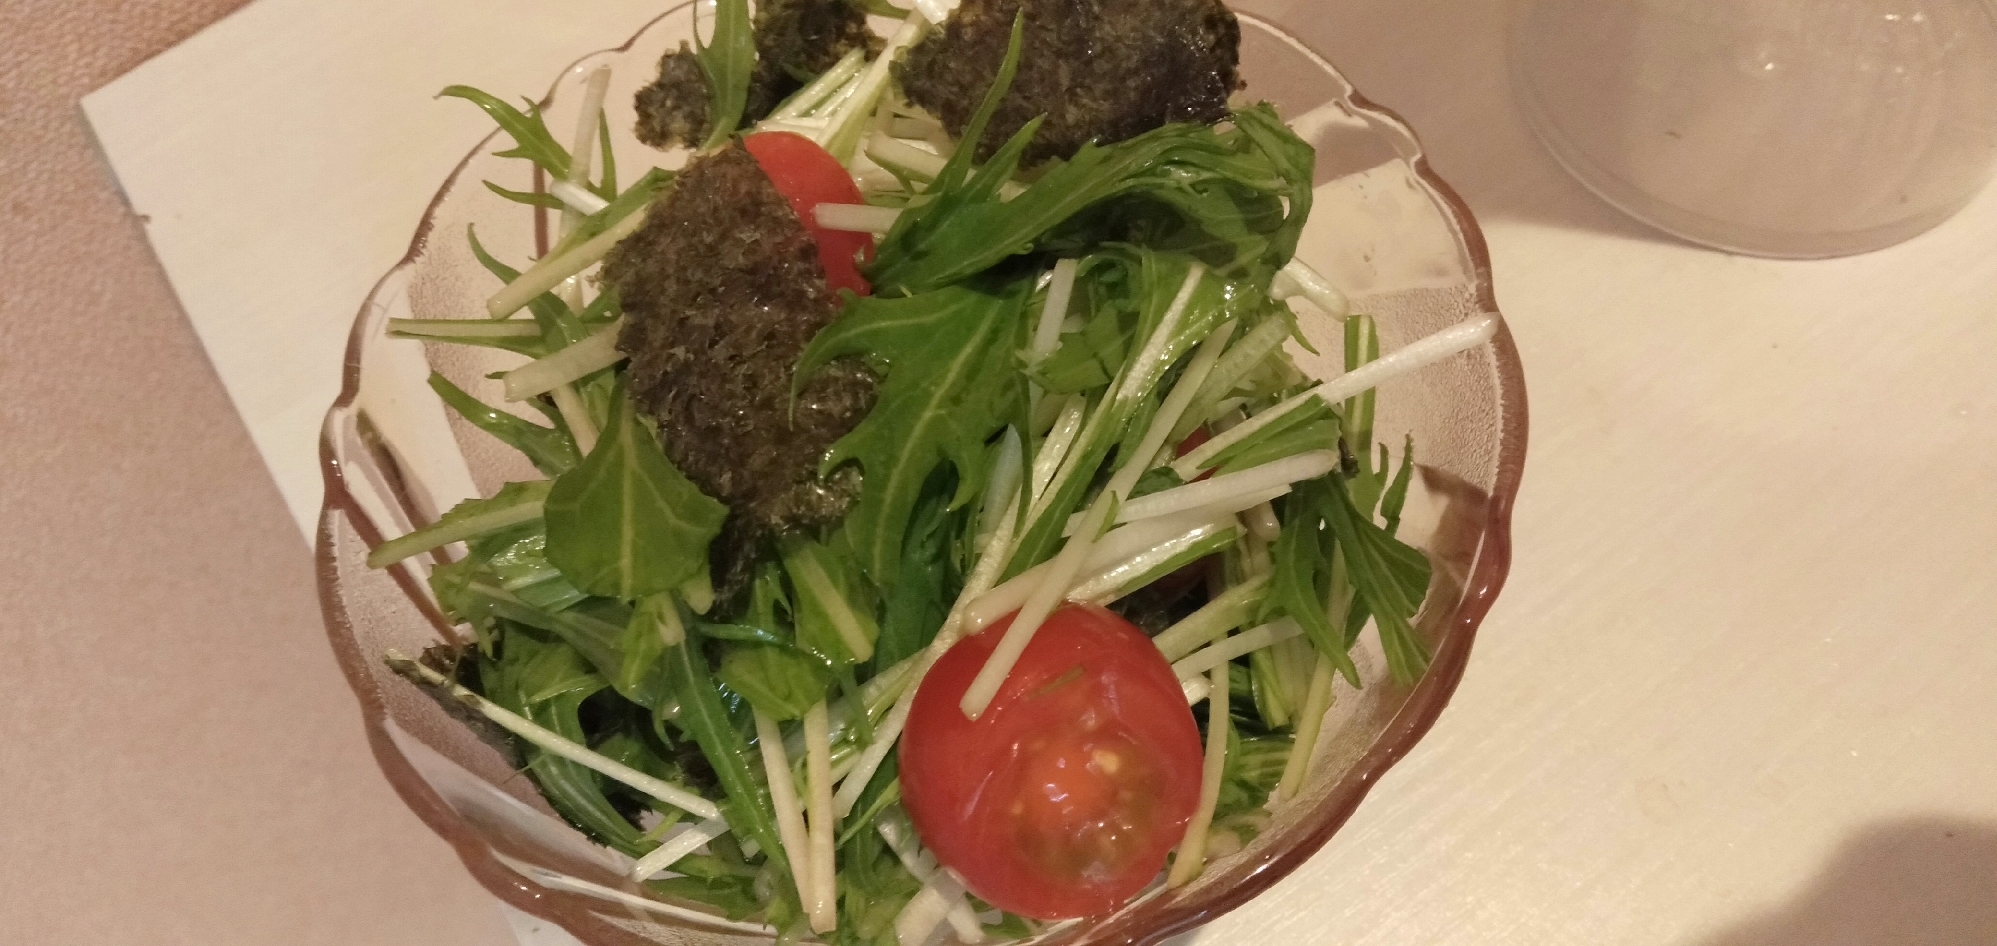 水菜の韓国風海苔サラダ